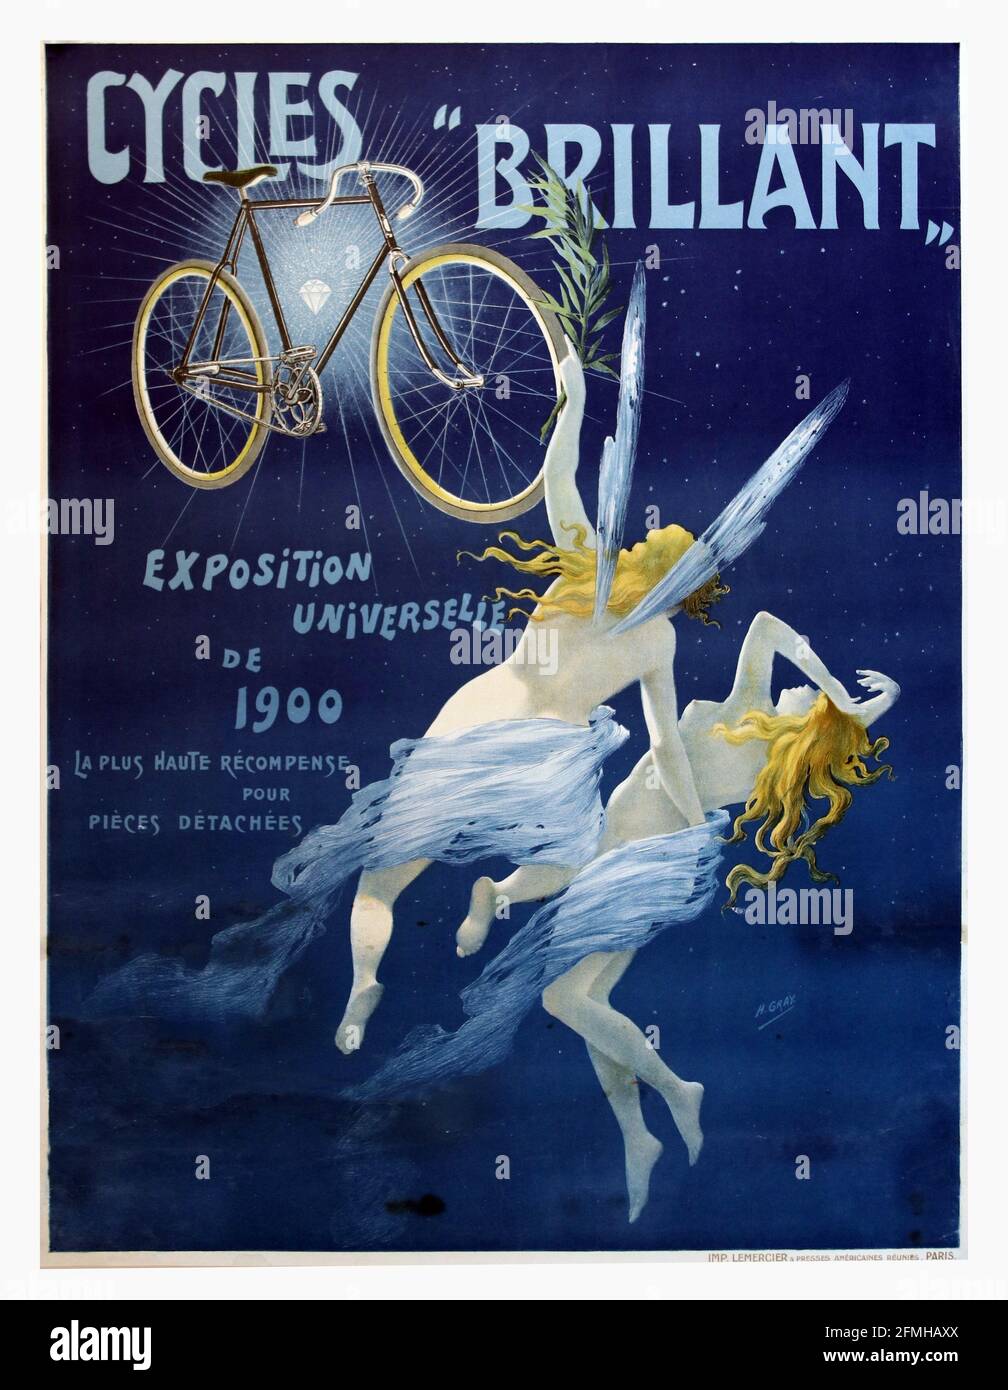 Cicli brillantante. Esposizione Universelle. Poster della pubblicità sulla bicicletta. Vecchio e vintage. Ottimizzato digitalmente. Foto Stock